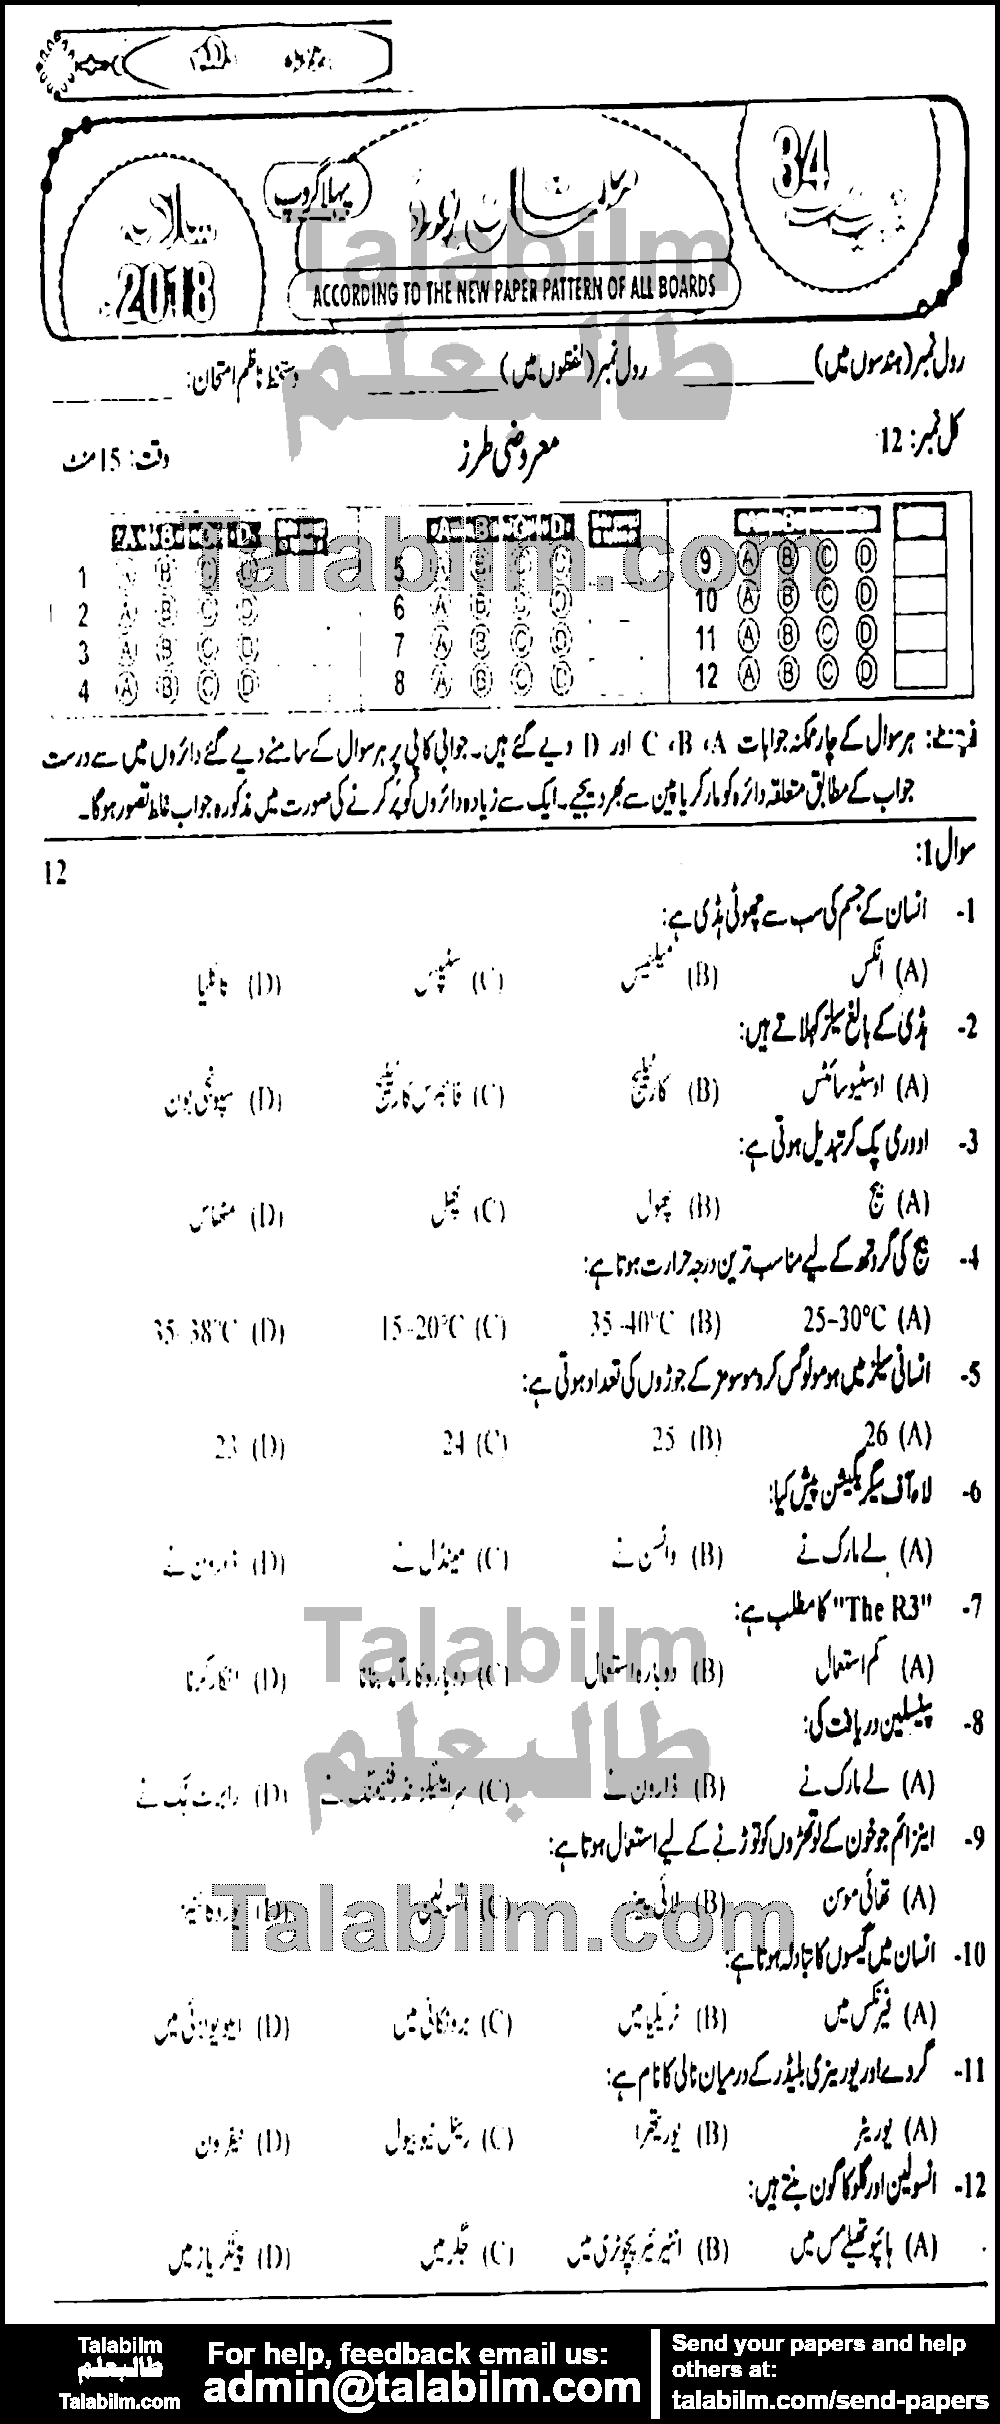 Biology 0 past paper for Urdu Medium 2018 Group-I